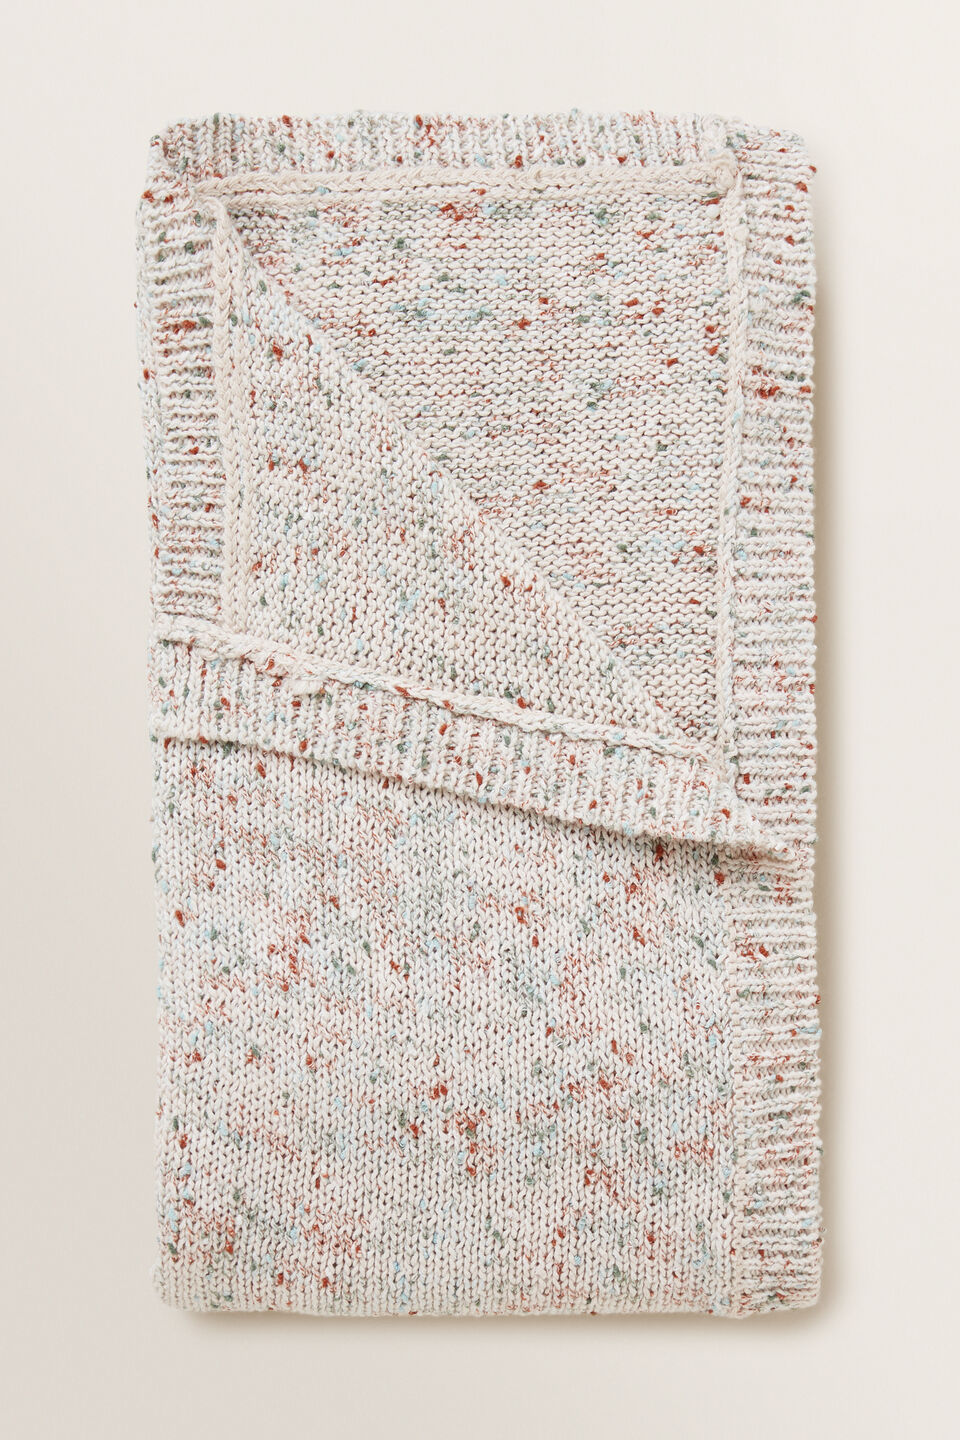 Knit Speckle Blanket  